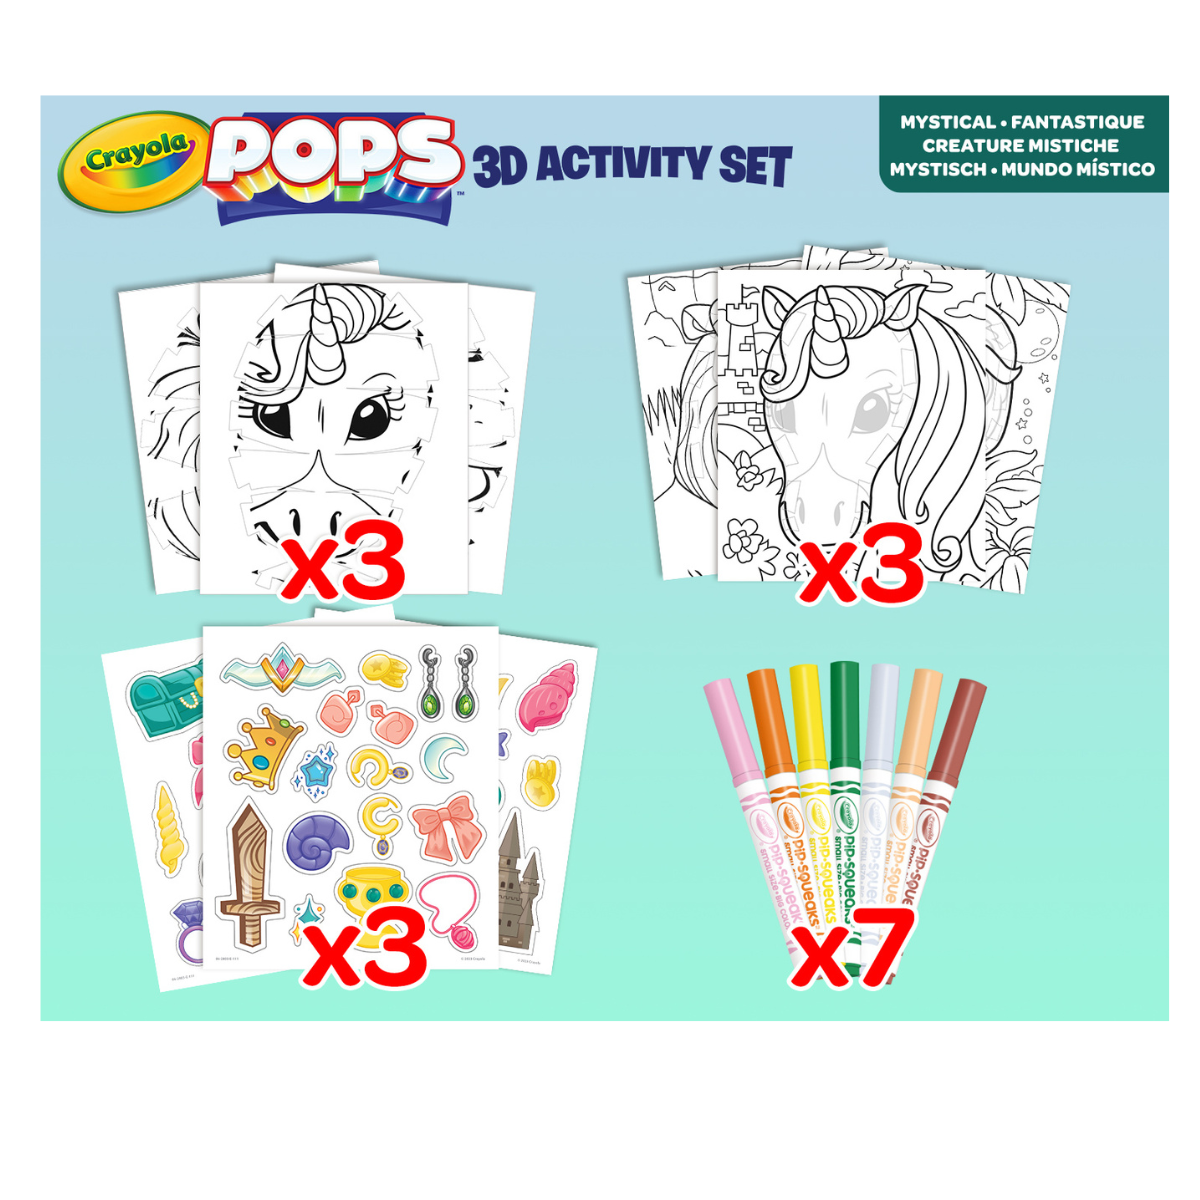 Crayola pops 3d activity set unicorno e creature fantastiche - colora e crea disegni tridimensionali - CRAYOLA